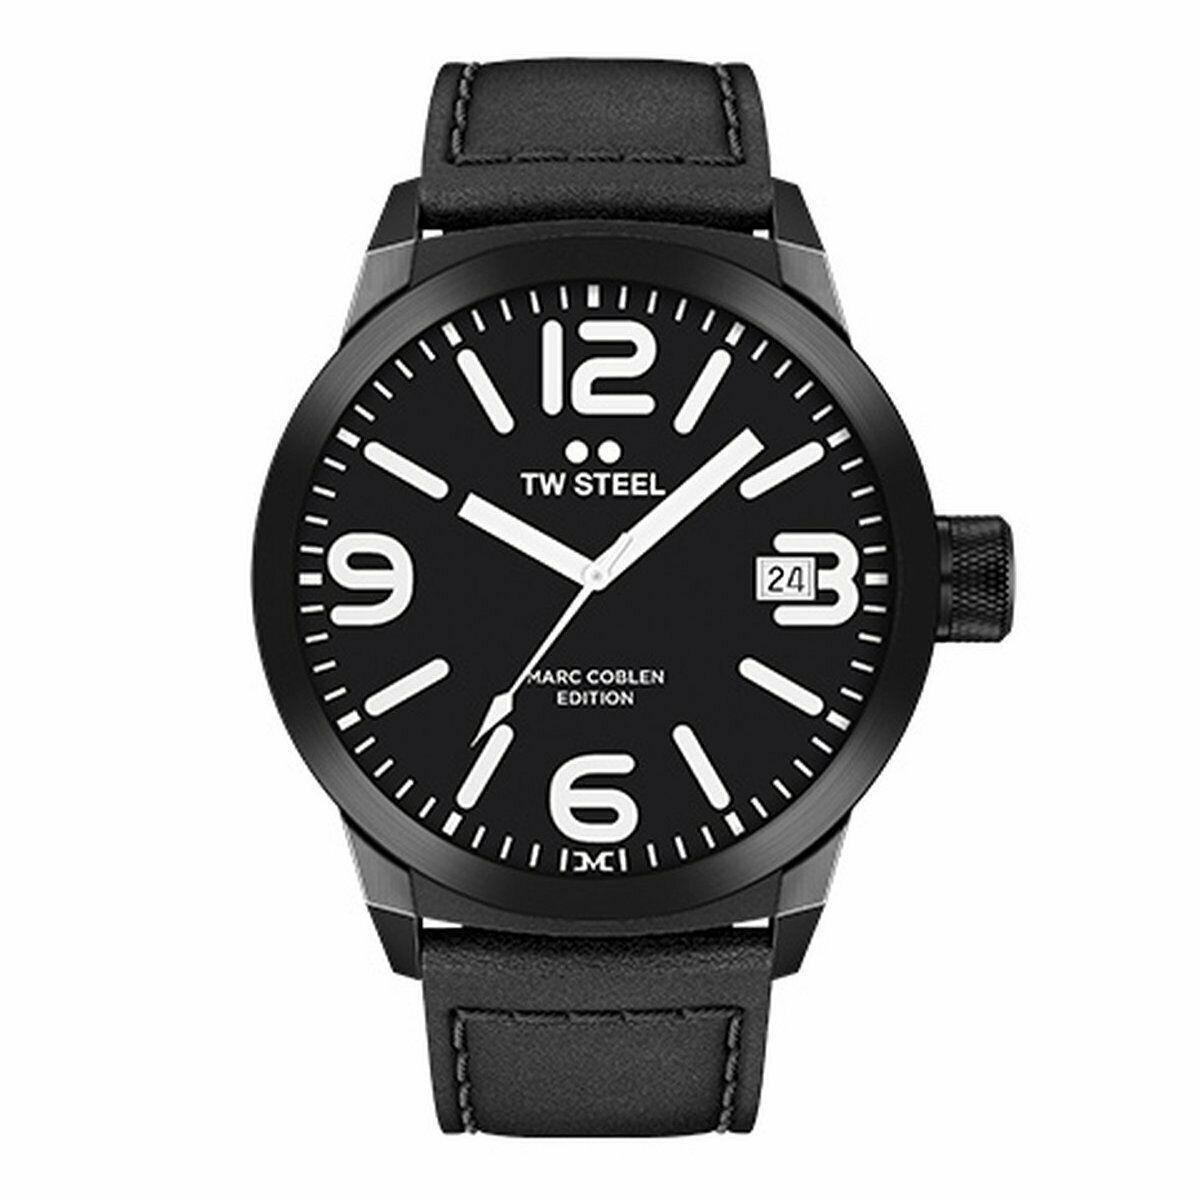 TW Steel - Heren Horloge TWMC30 Marc Coblen - Zwart - Maat one size